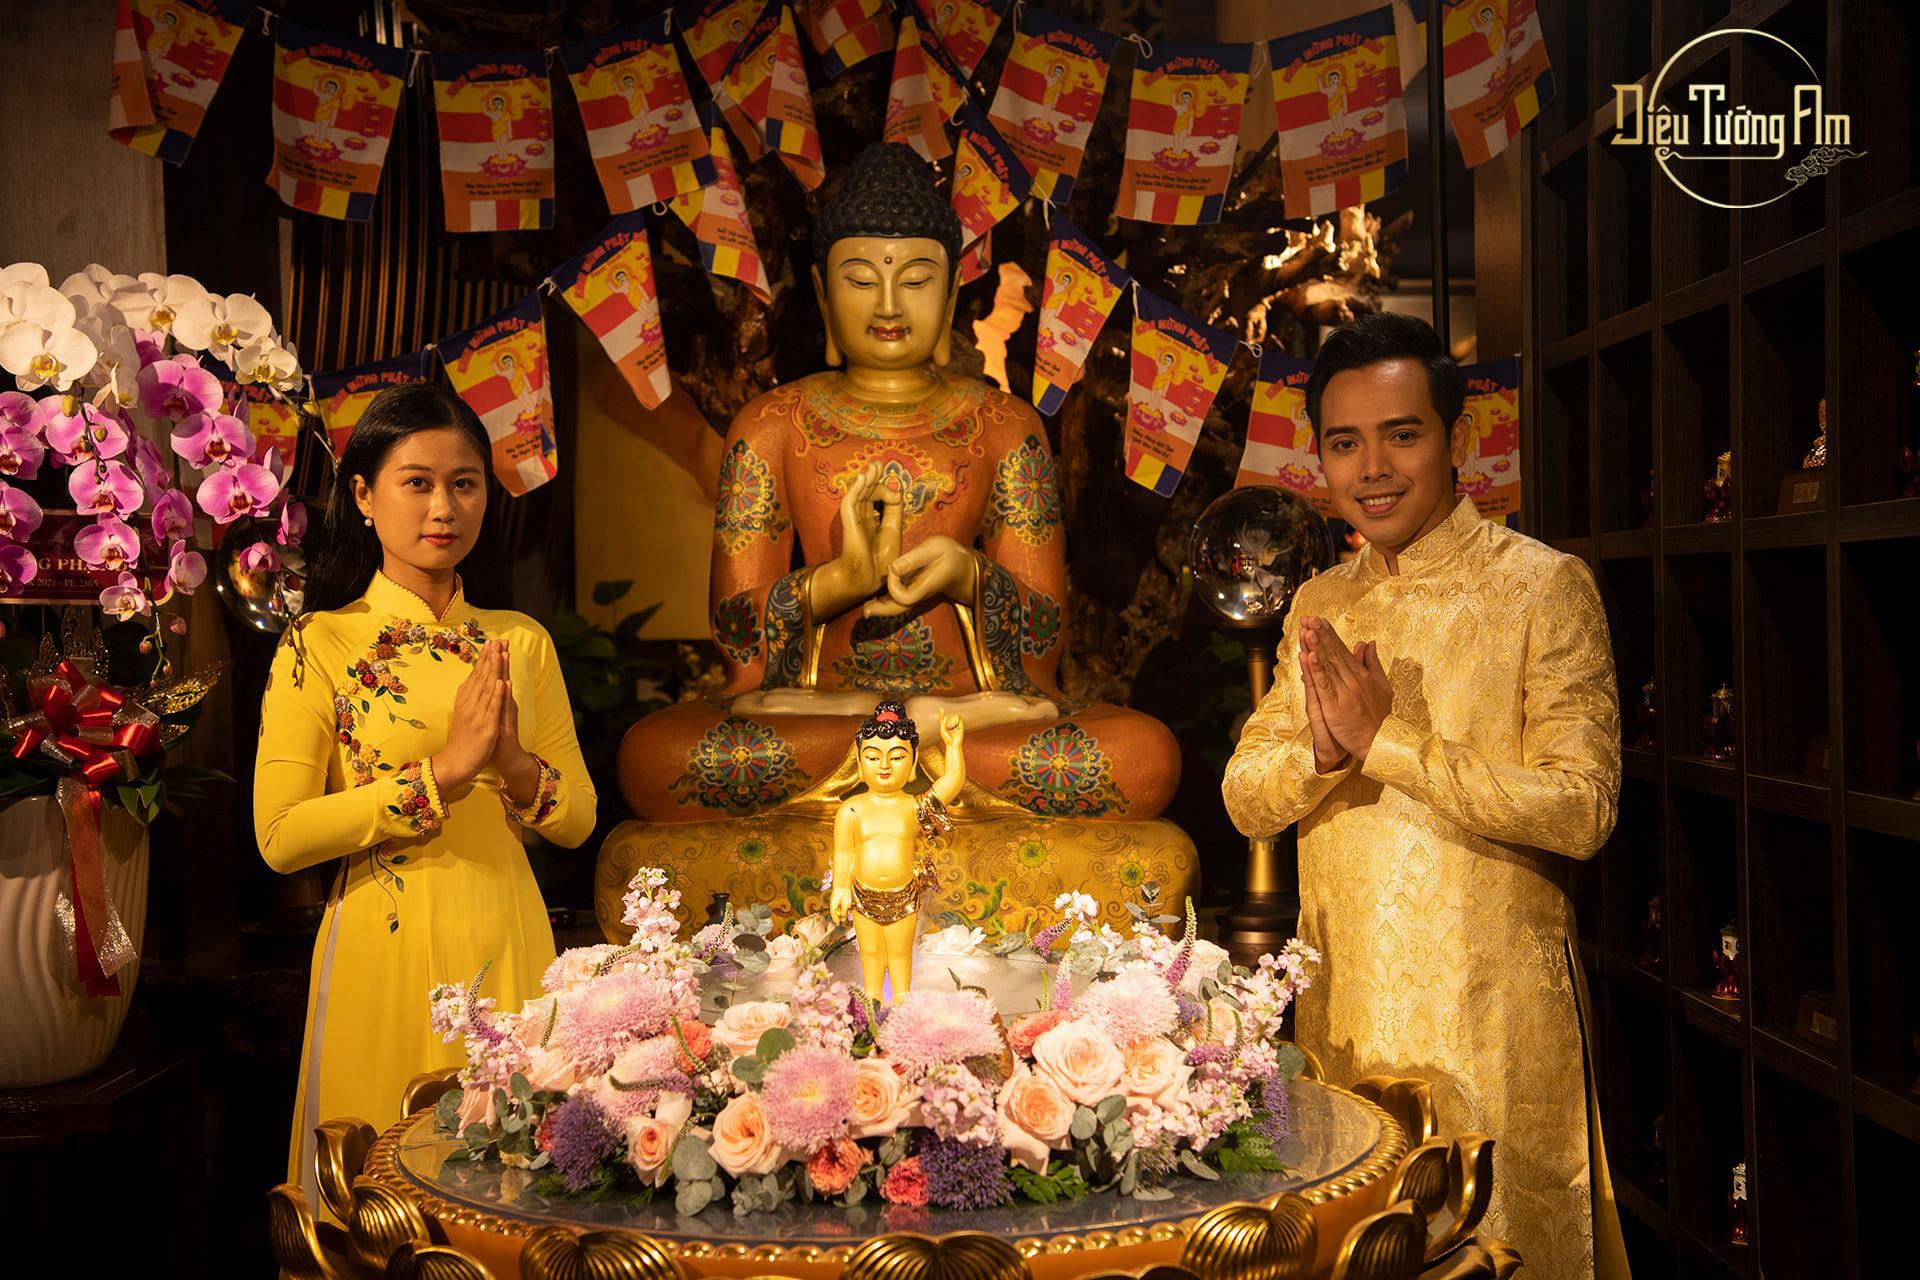 Lễ Tắm Phật Trang Nghiêm Và Ấm Cúng Tại Không Gian Diệu Tướng Am